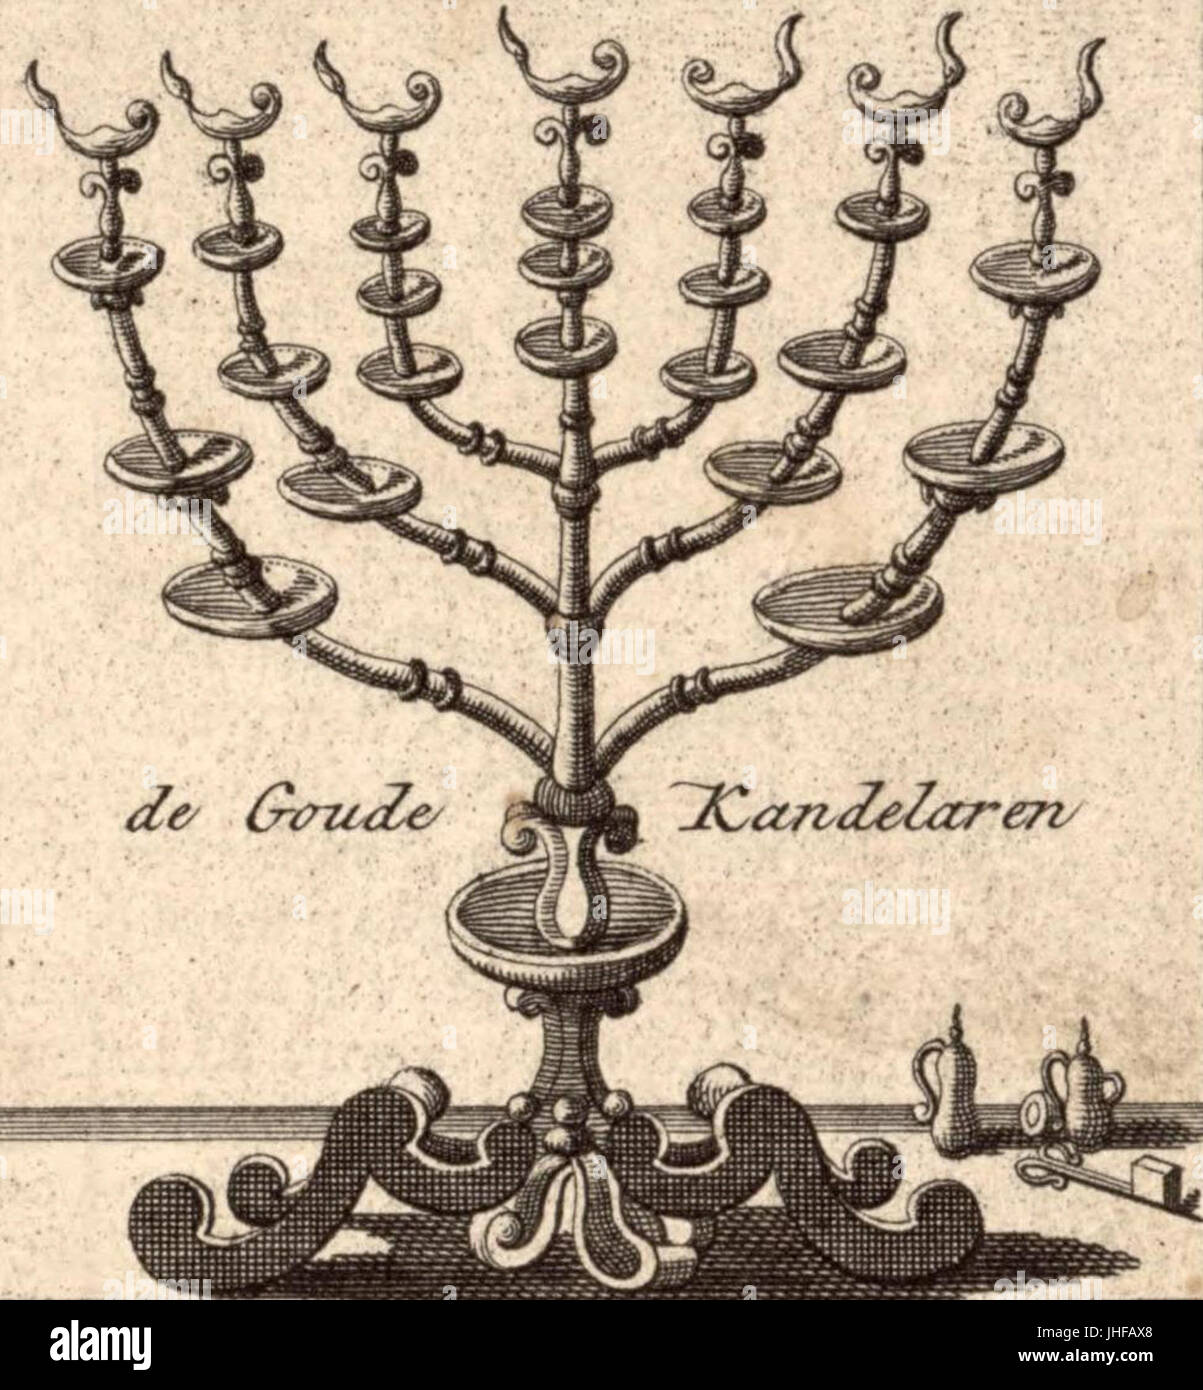 Jan van Jagen. de Goude Kandelaren. Ierusalem. 1770s Stock Photo